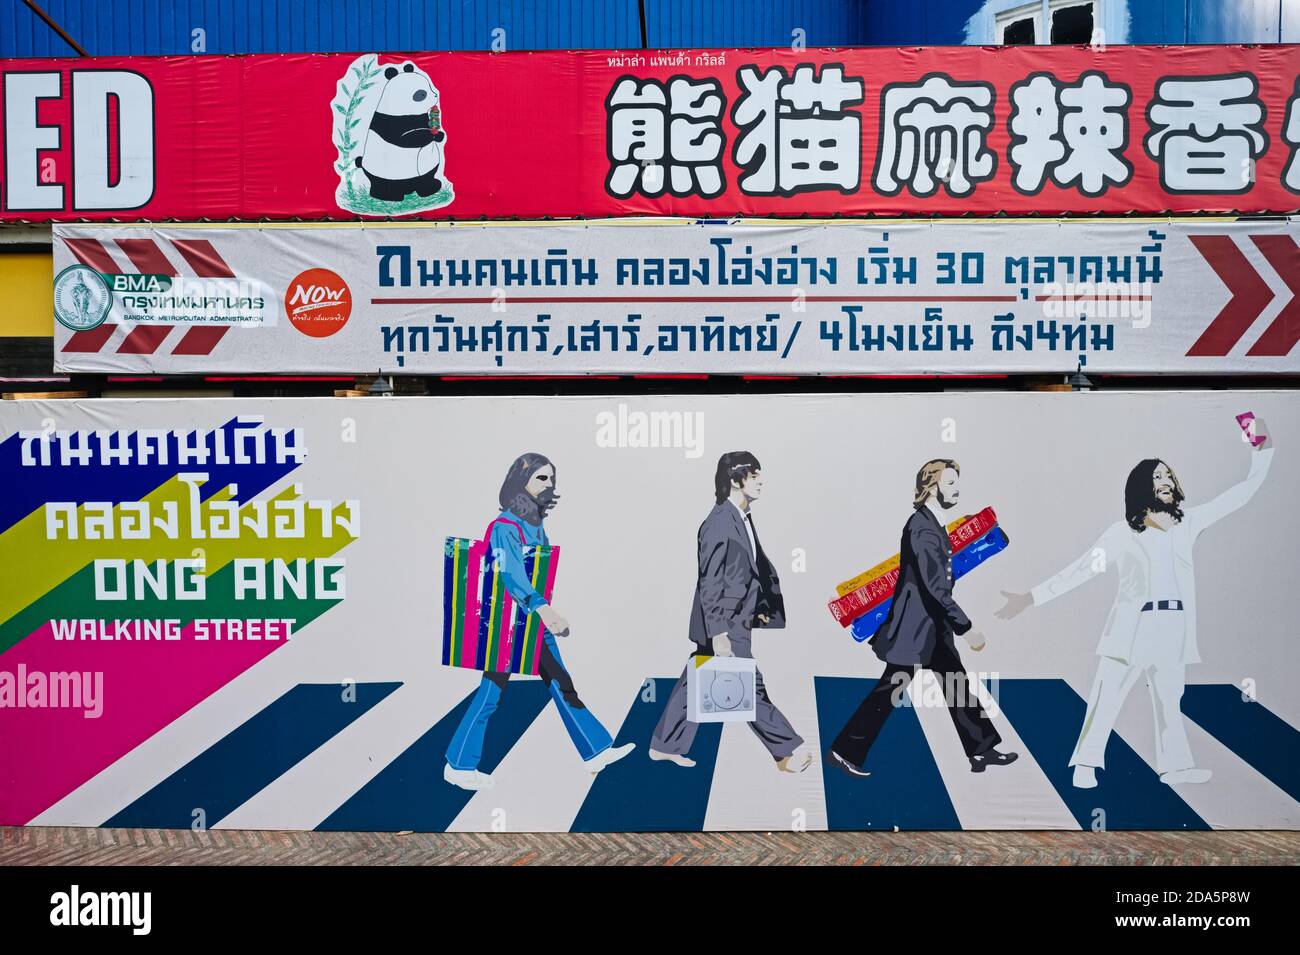 Une fresque près de la rue Ong Ang Walking Street, Chinatown / Phahunat, Bangkok, Thaïlande, basée sur la couverture emblématique de l'album Abbey Road des Beatles Banque D'Images